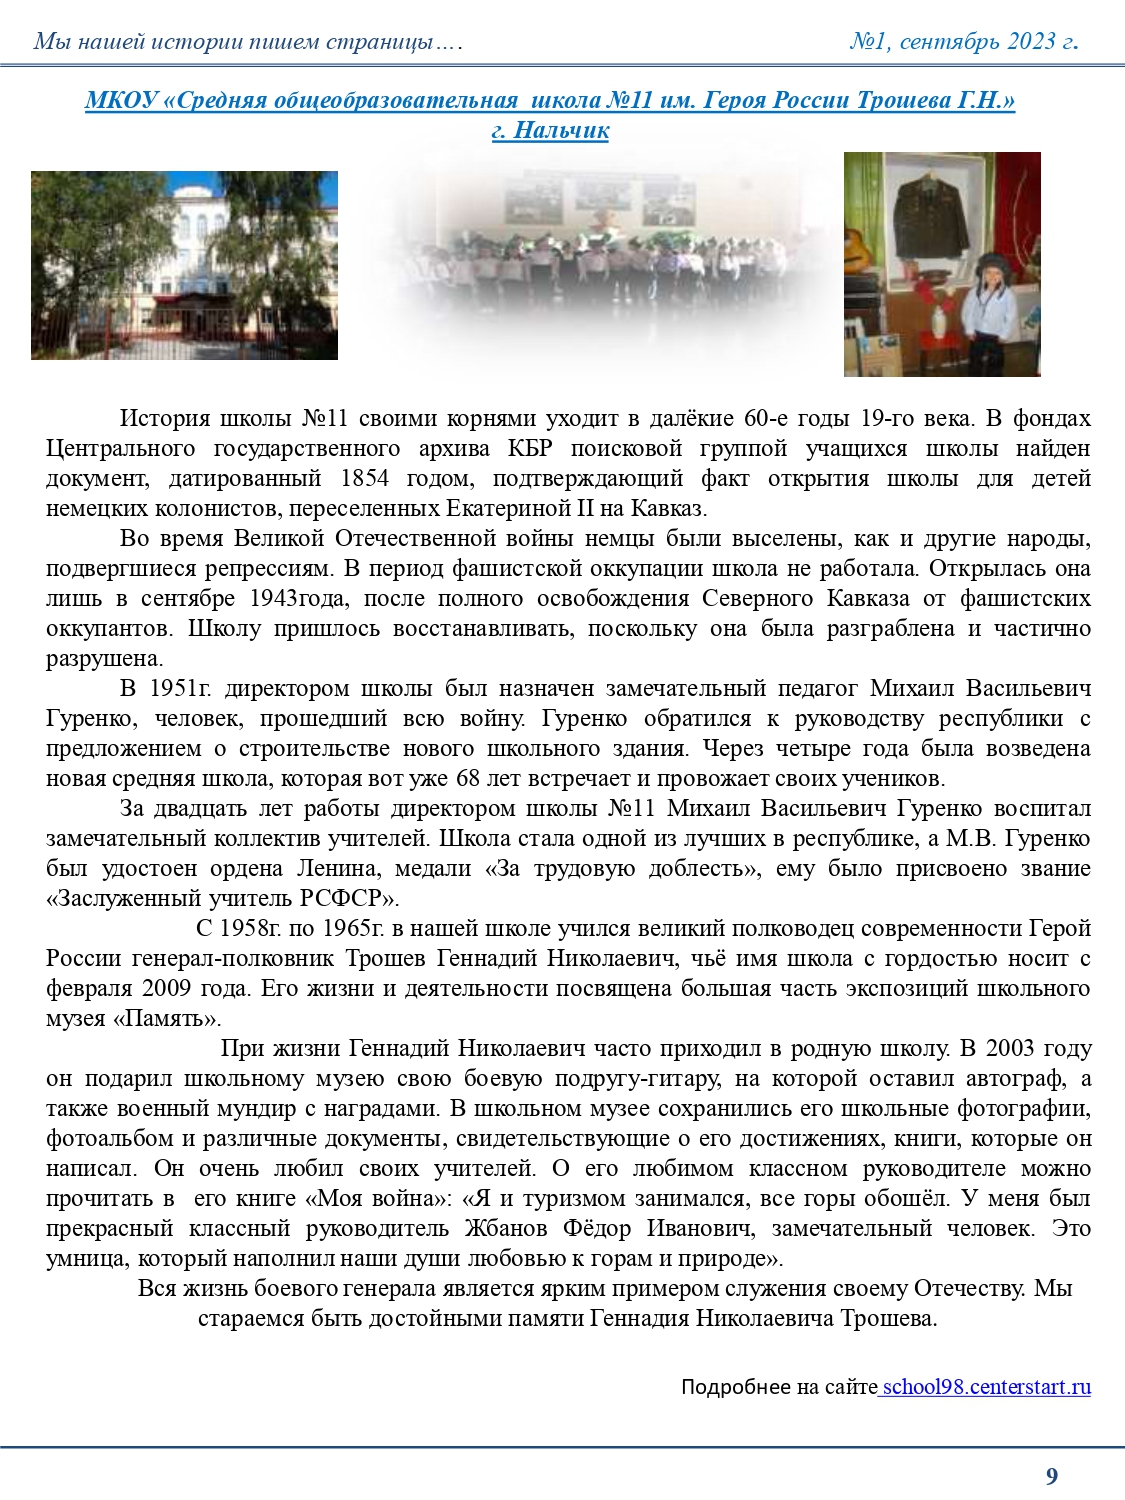 Первый номер газеты "Юные Трошевцы"